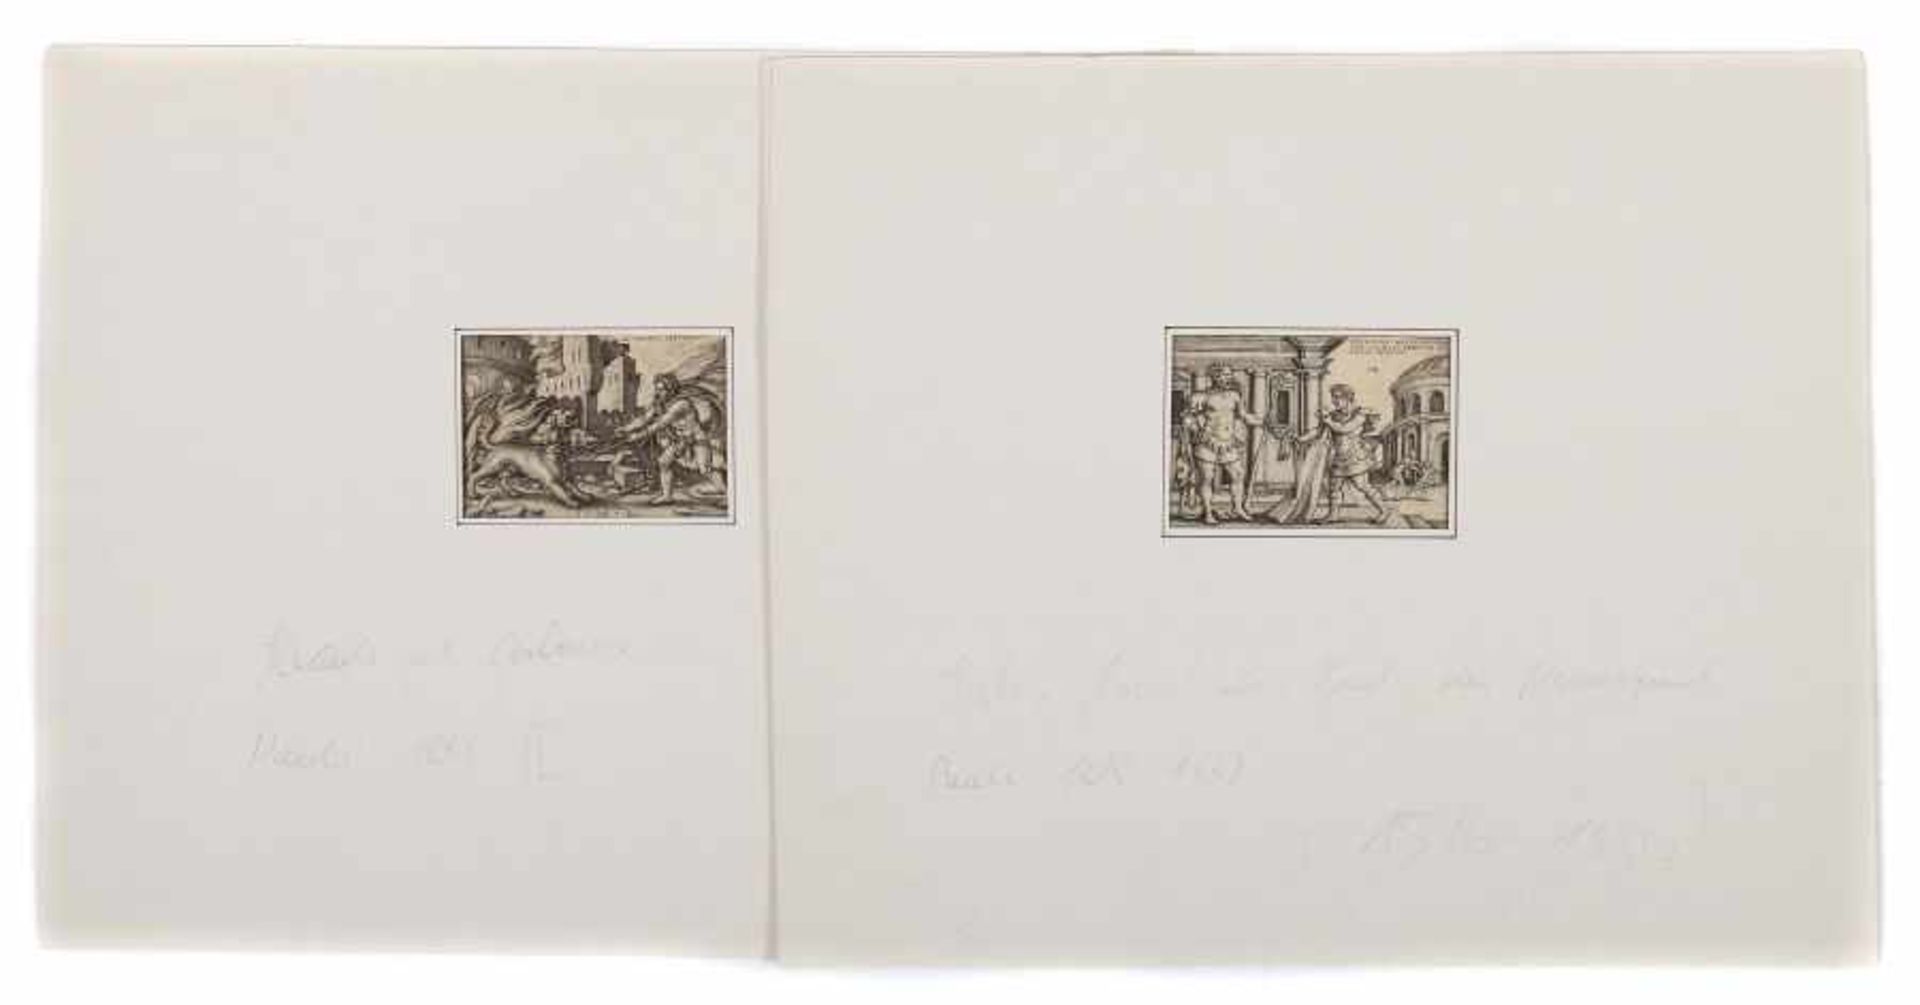 Beham, Hans Sebald Nürnberg 1500 - 1550 Frankfurt, Kupferstecher und Maler. 2 Darstellungen aus